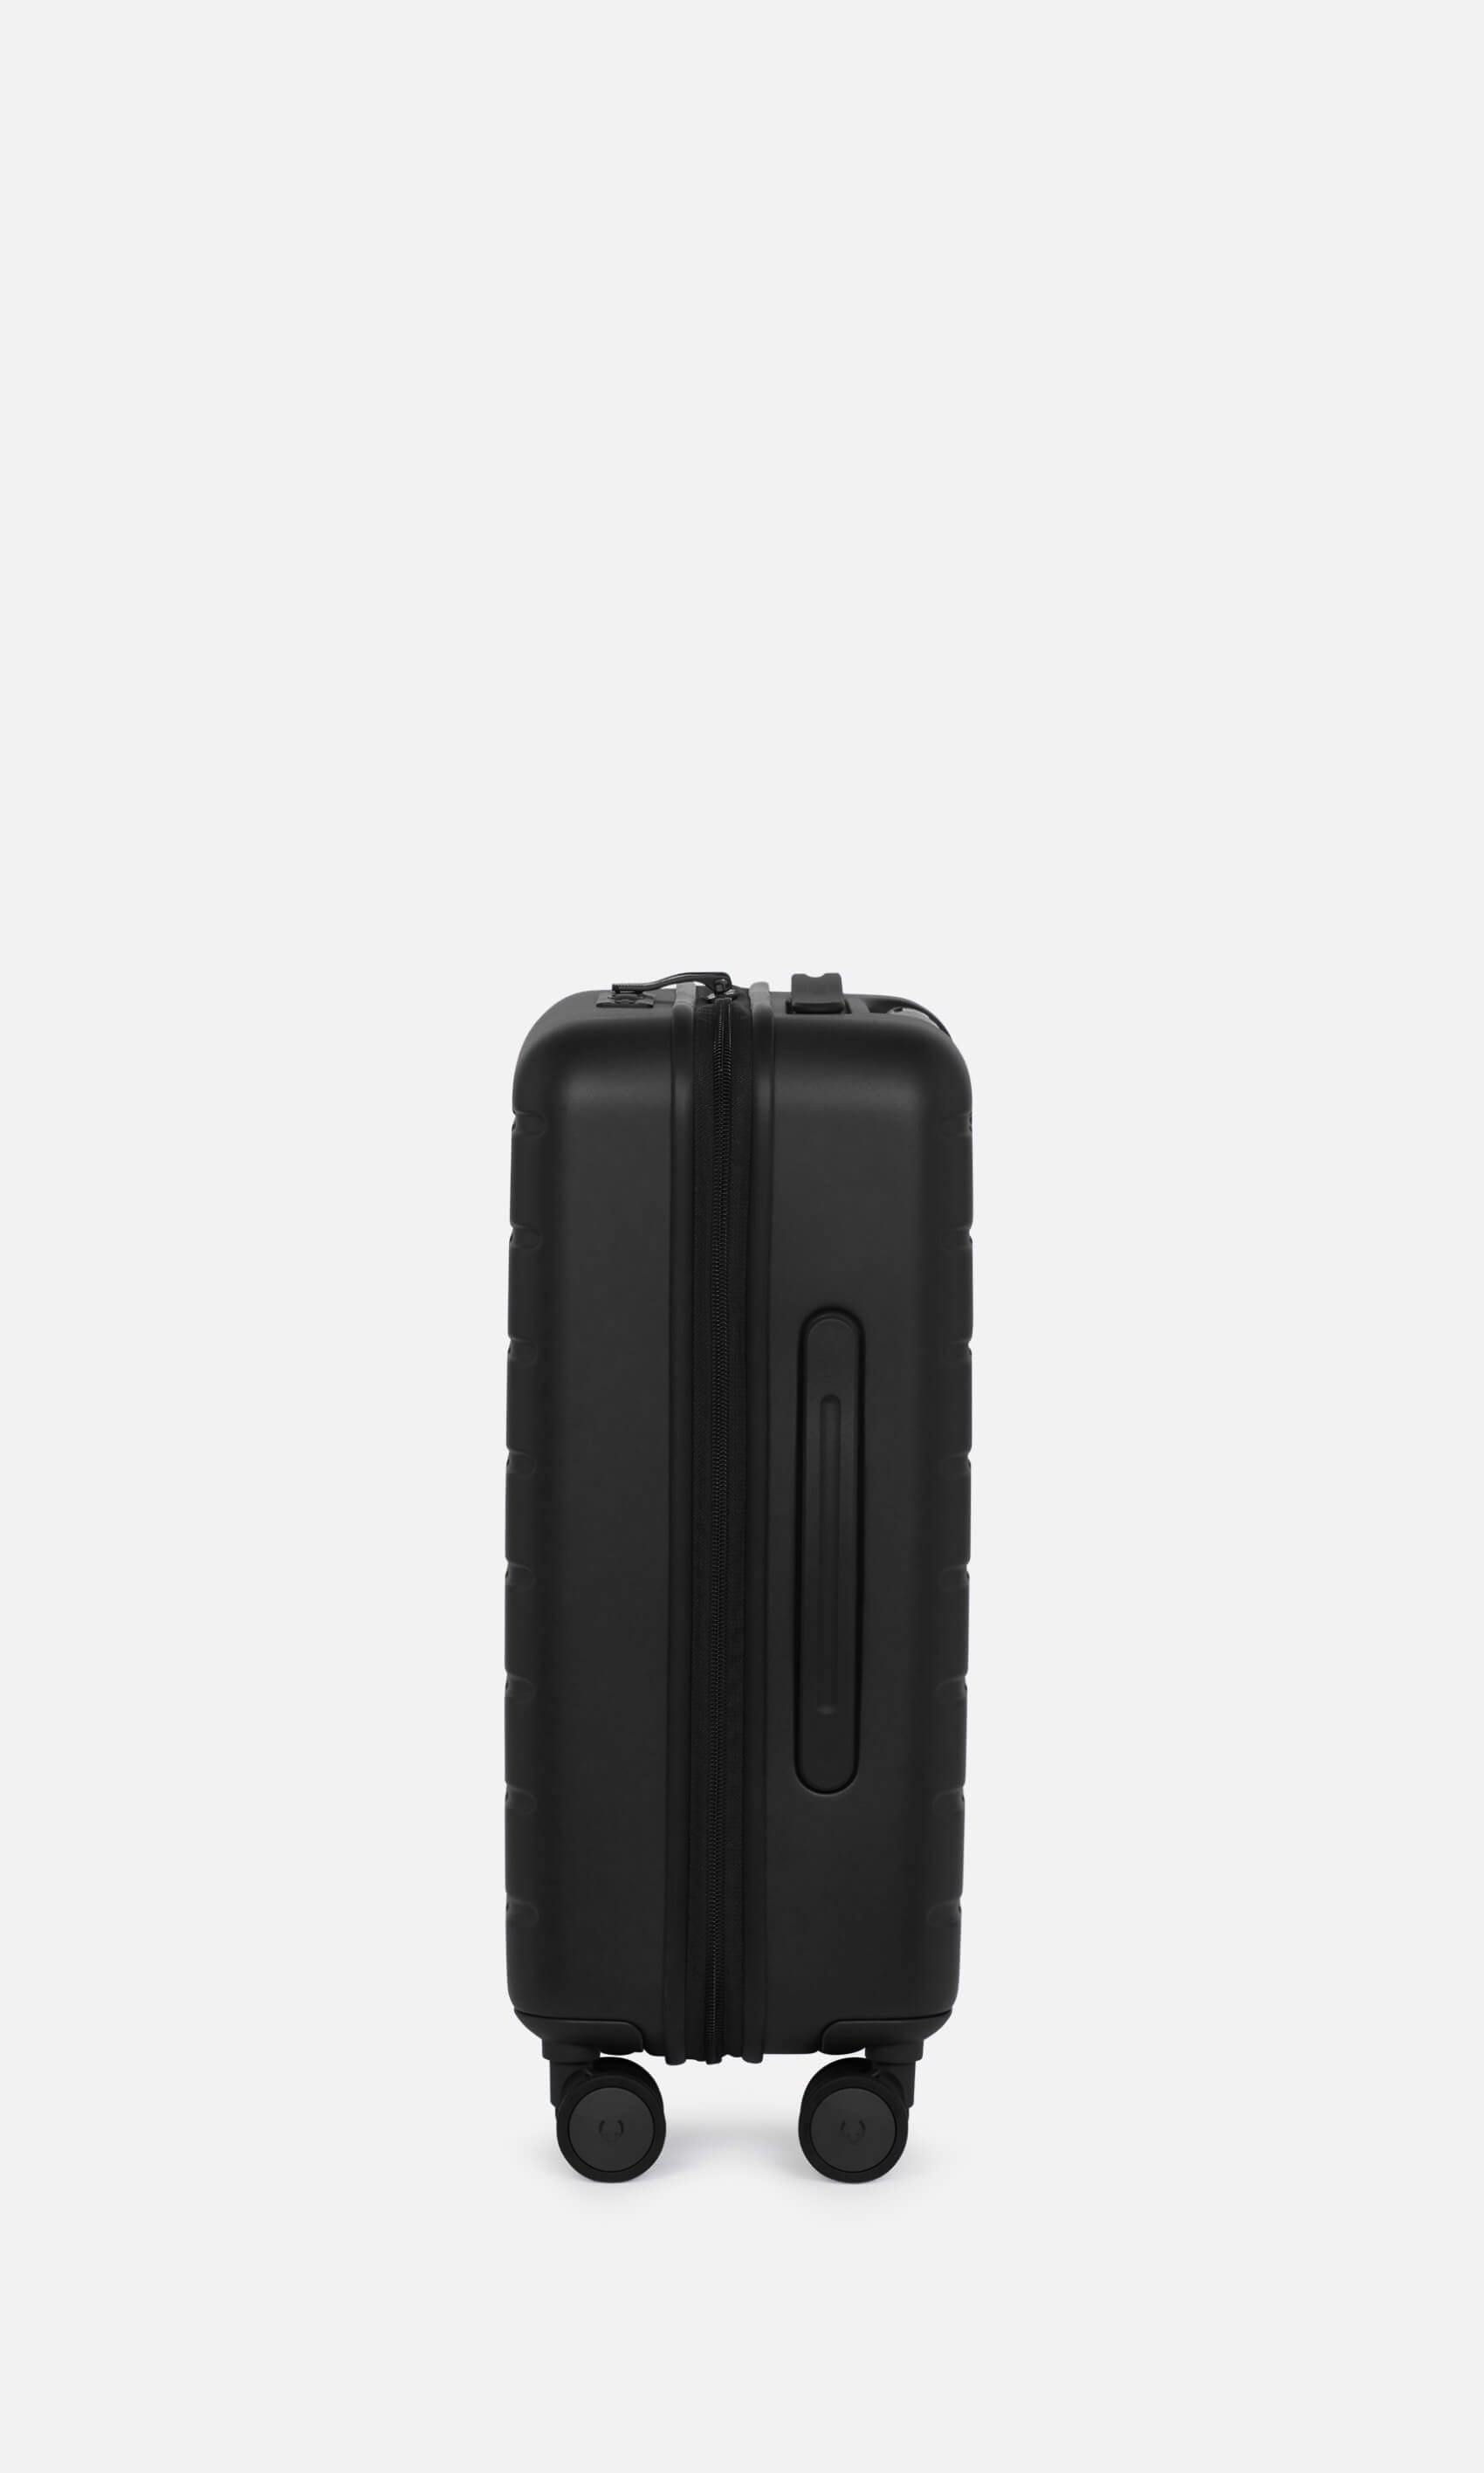 Antler Luggage -  Stamford cabin in midnight black - Hard Suitcases Stamford Cabin Suitcase Black | Hard Luggage | Antler UK